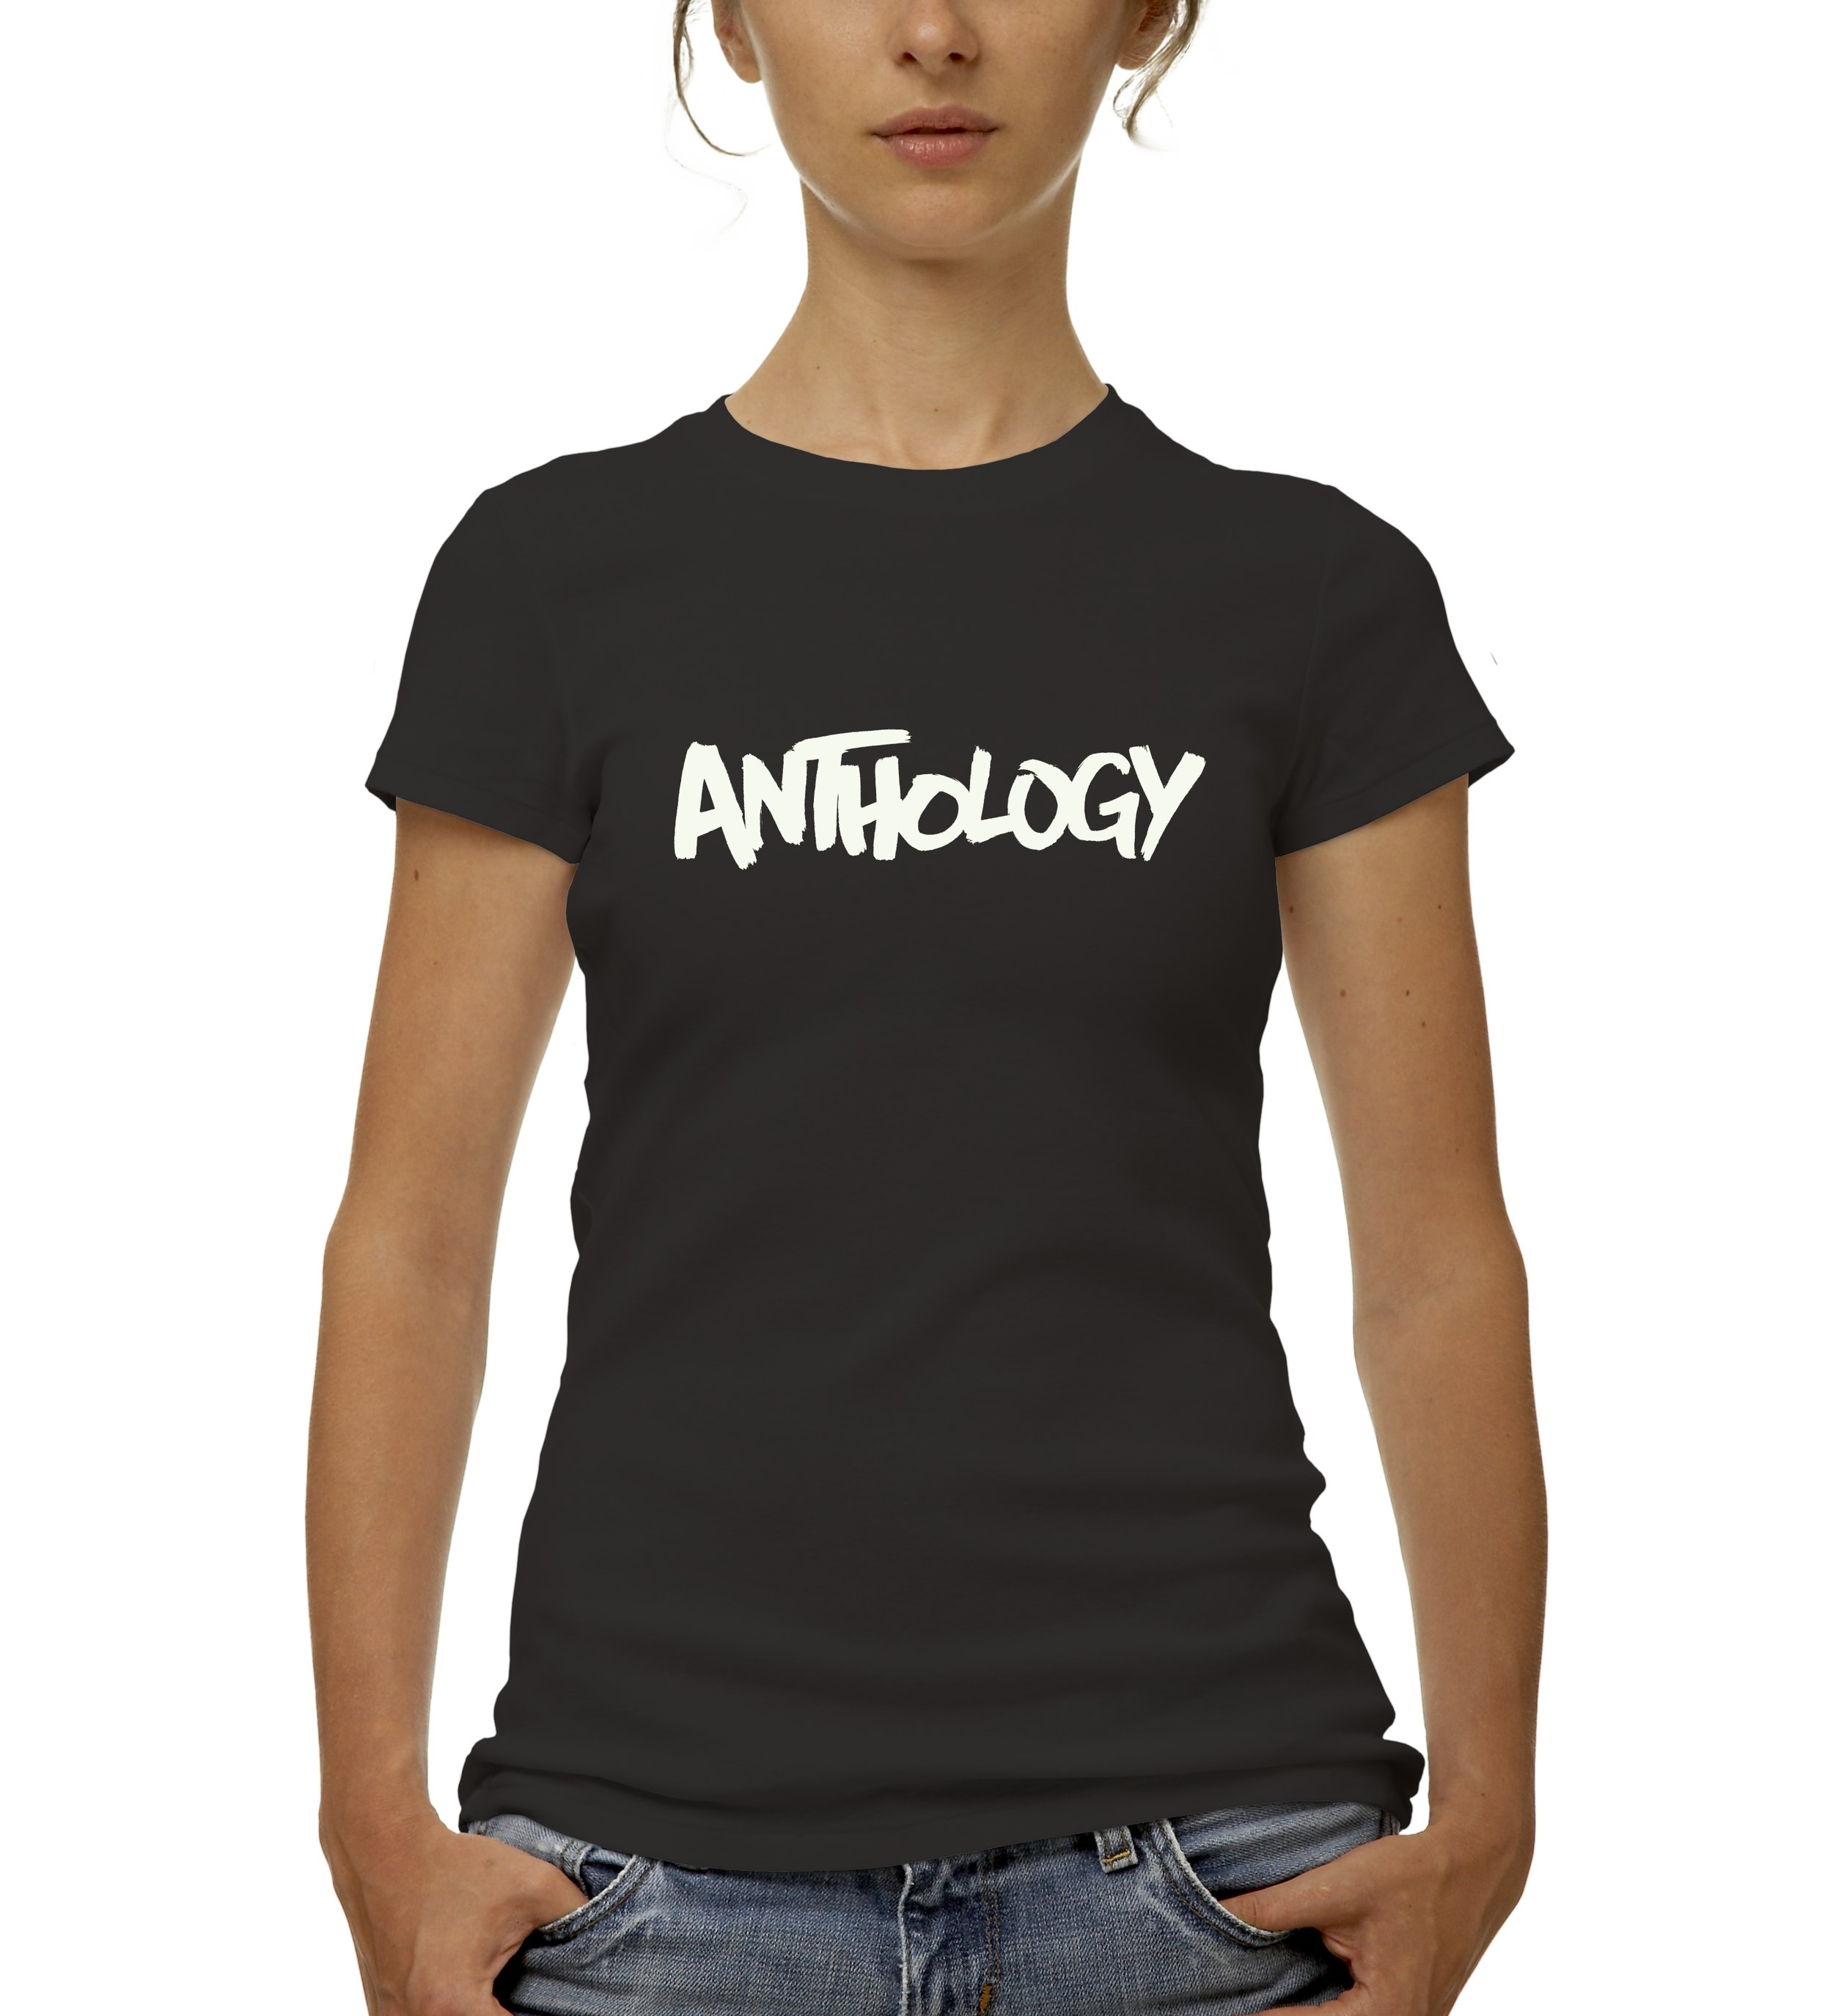 Anthology Tshirt.jpg